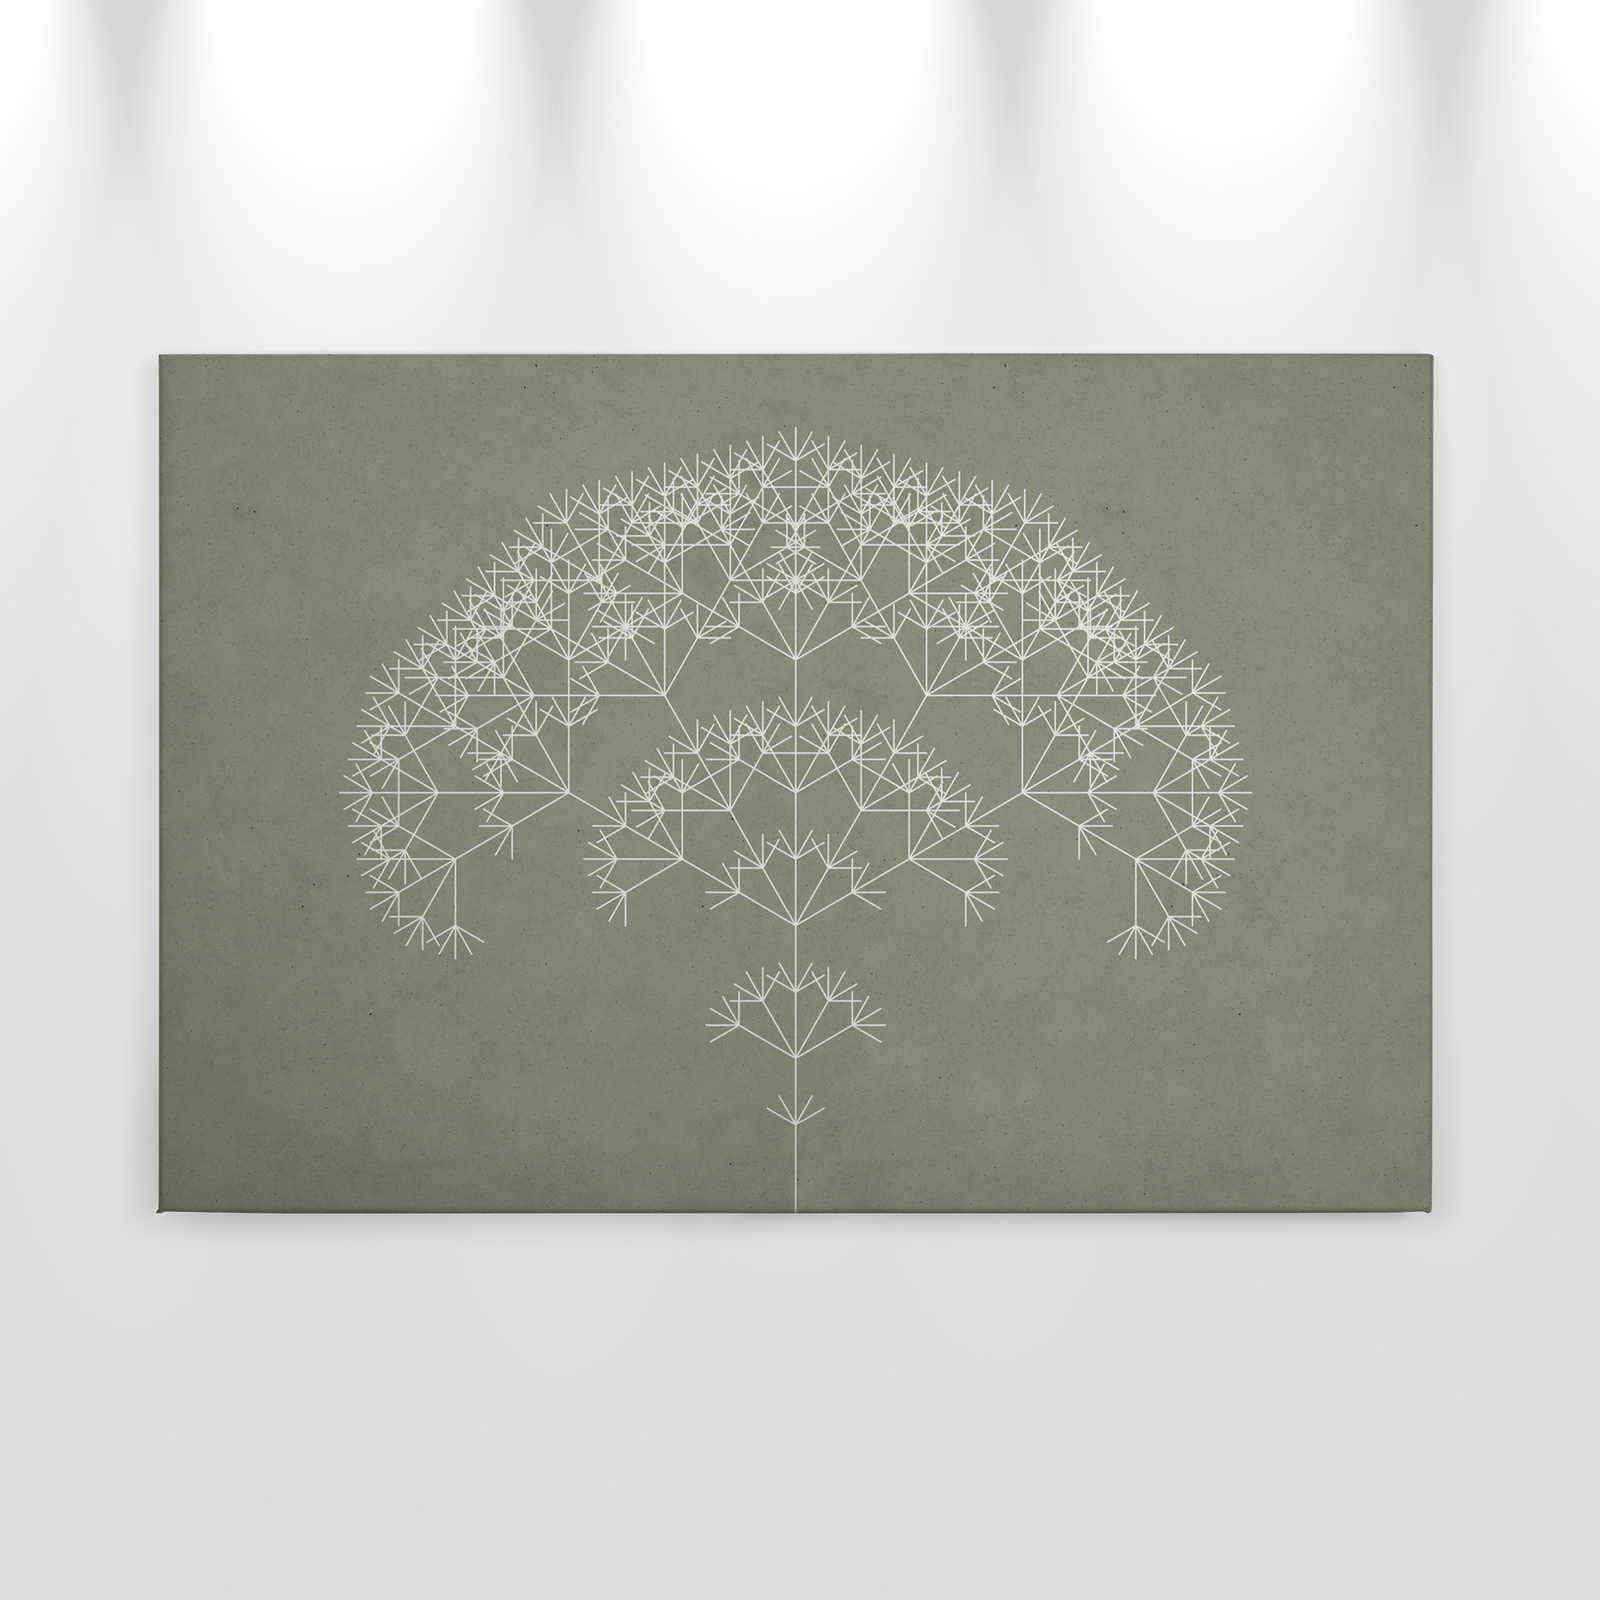             Quadro su tela Dandelions Tree | verde, bianco - 0,90 m x 0,60 m
        